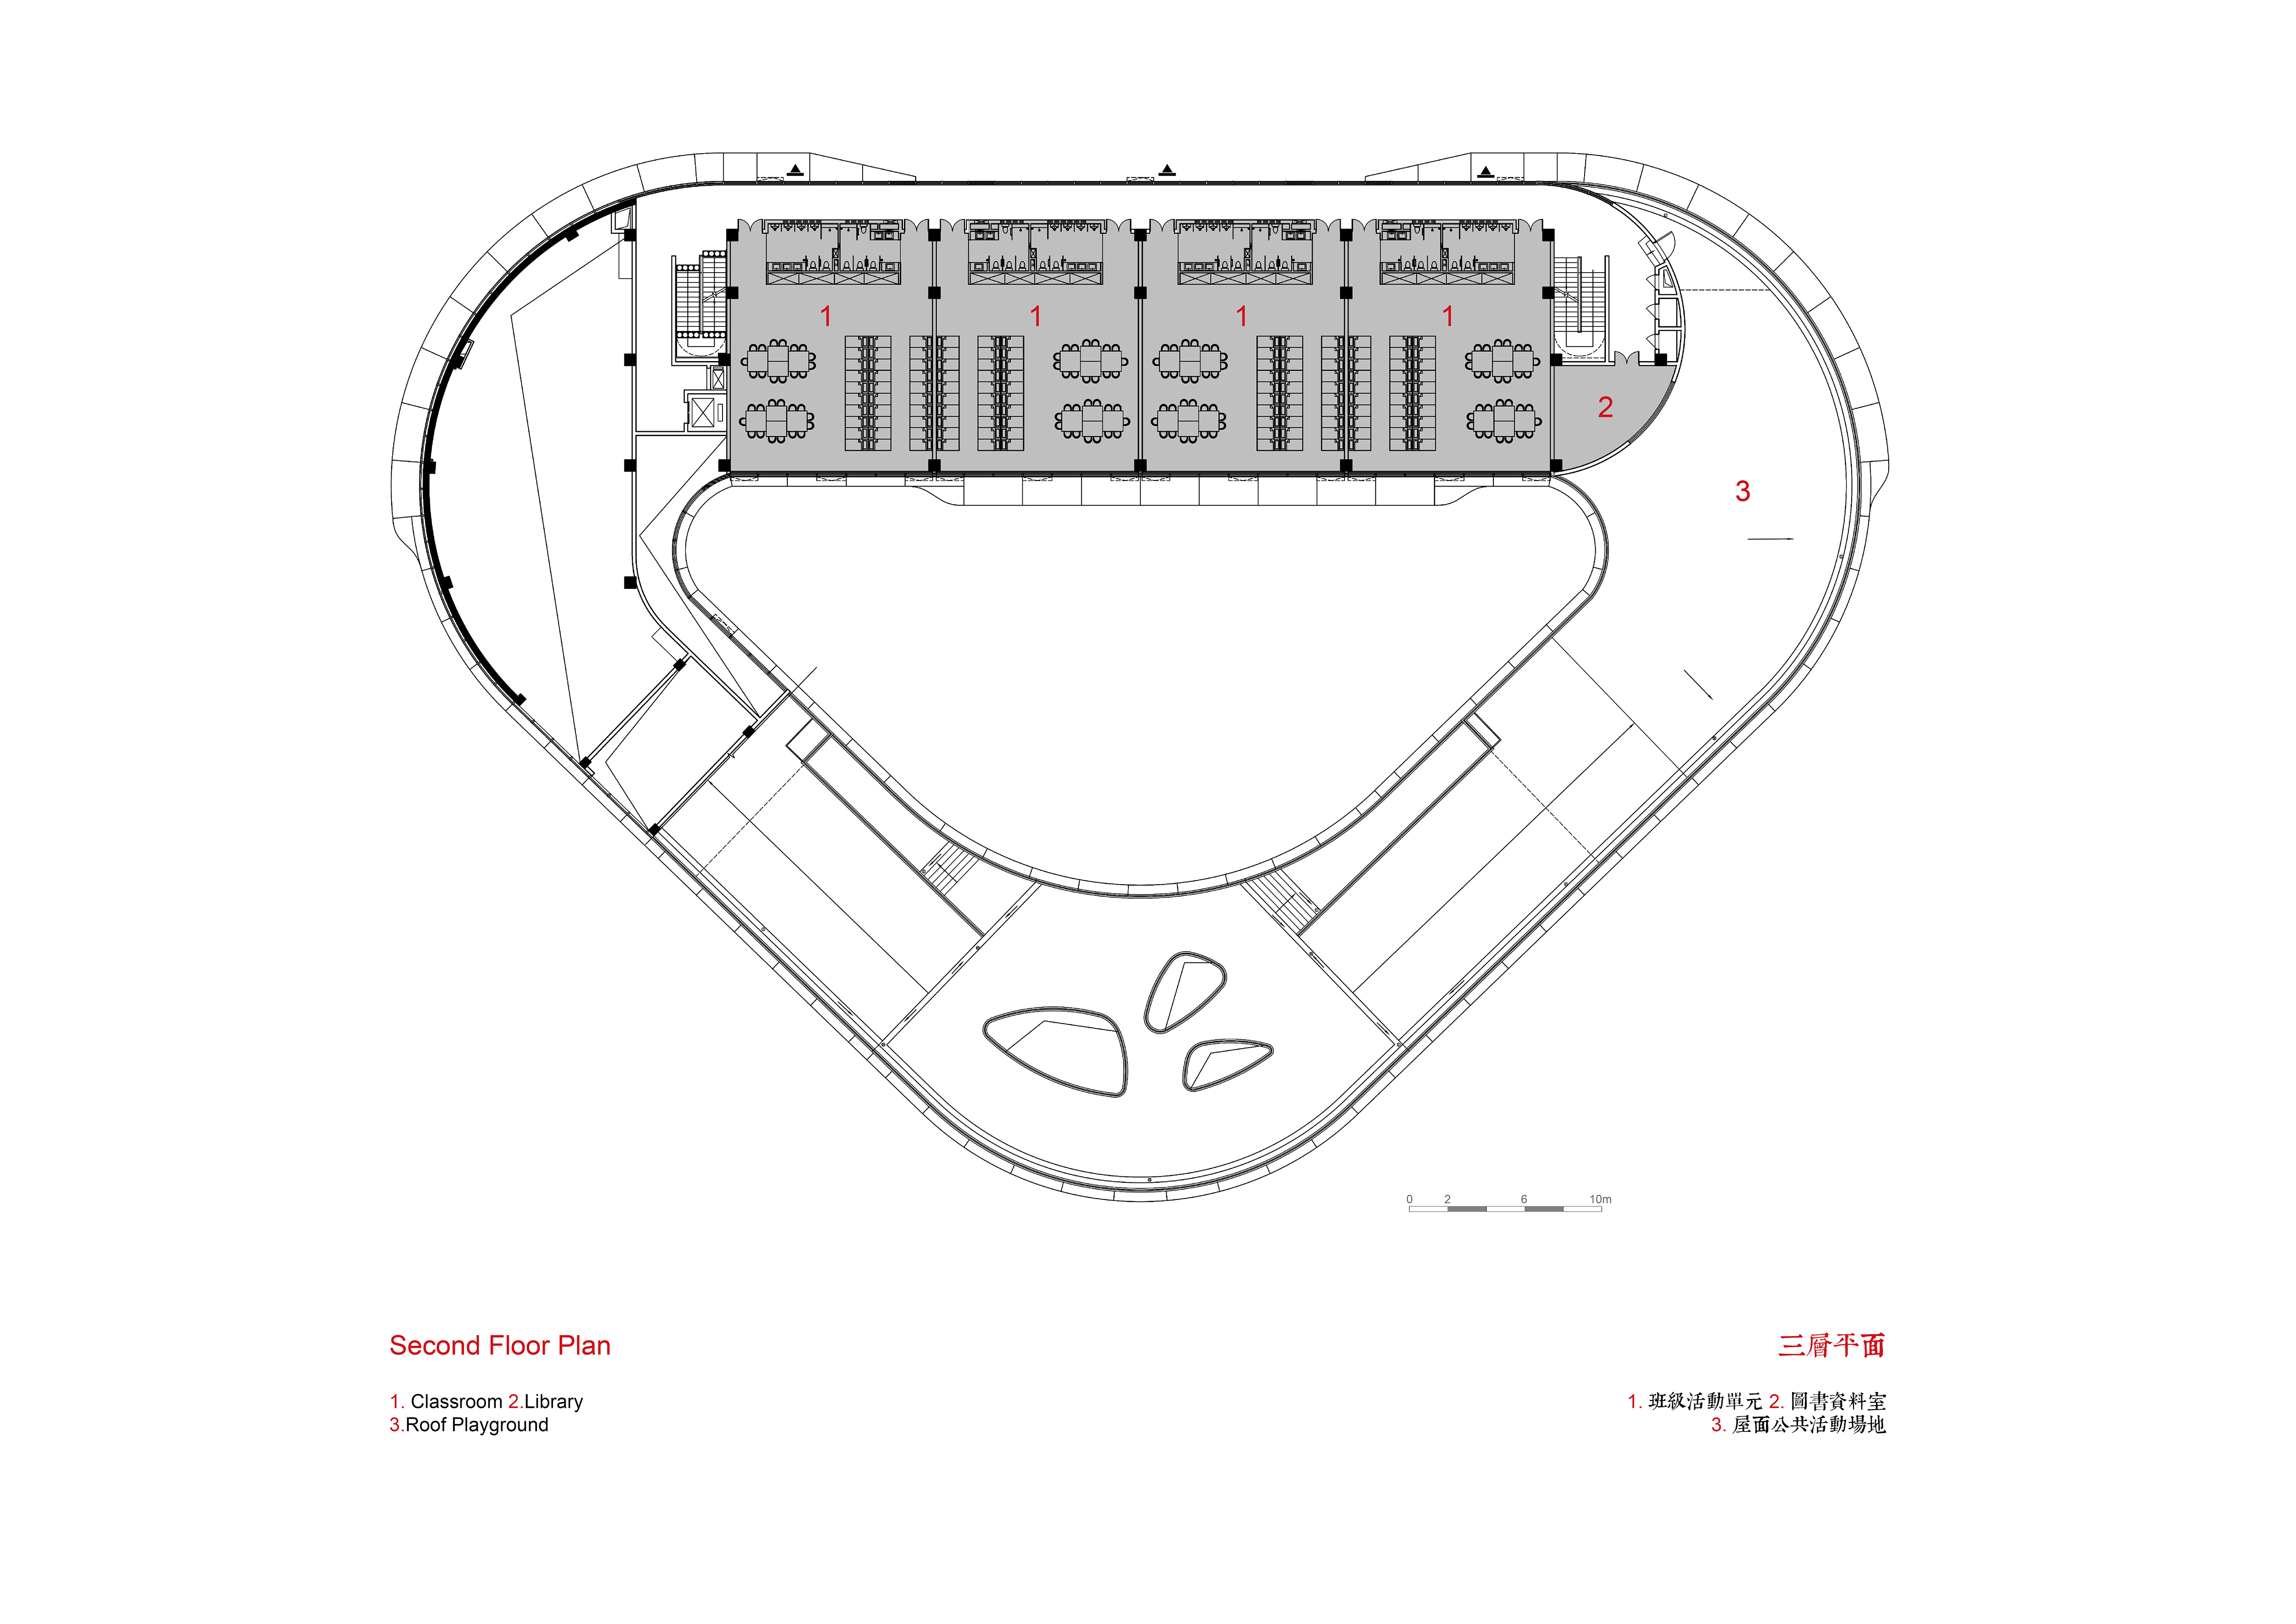 04. 旭辉甜甜圈幼儿园 三层平面图 CIFI Donut Kindergarten Third Floor Plan.jpg